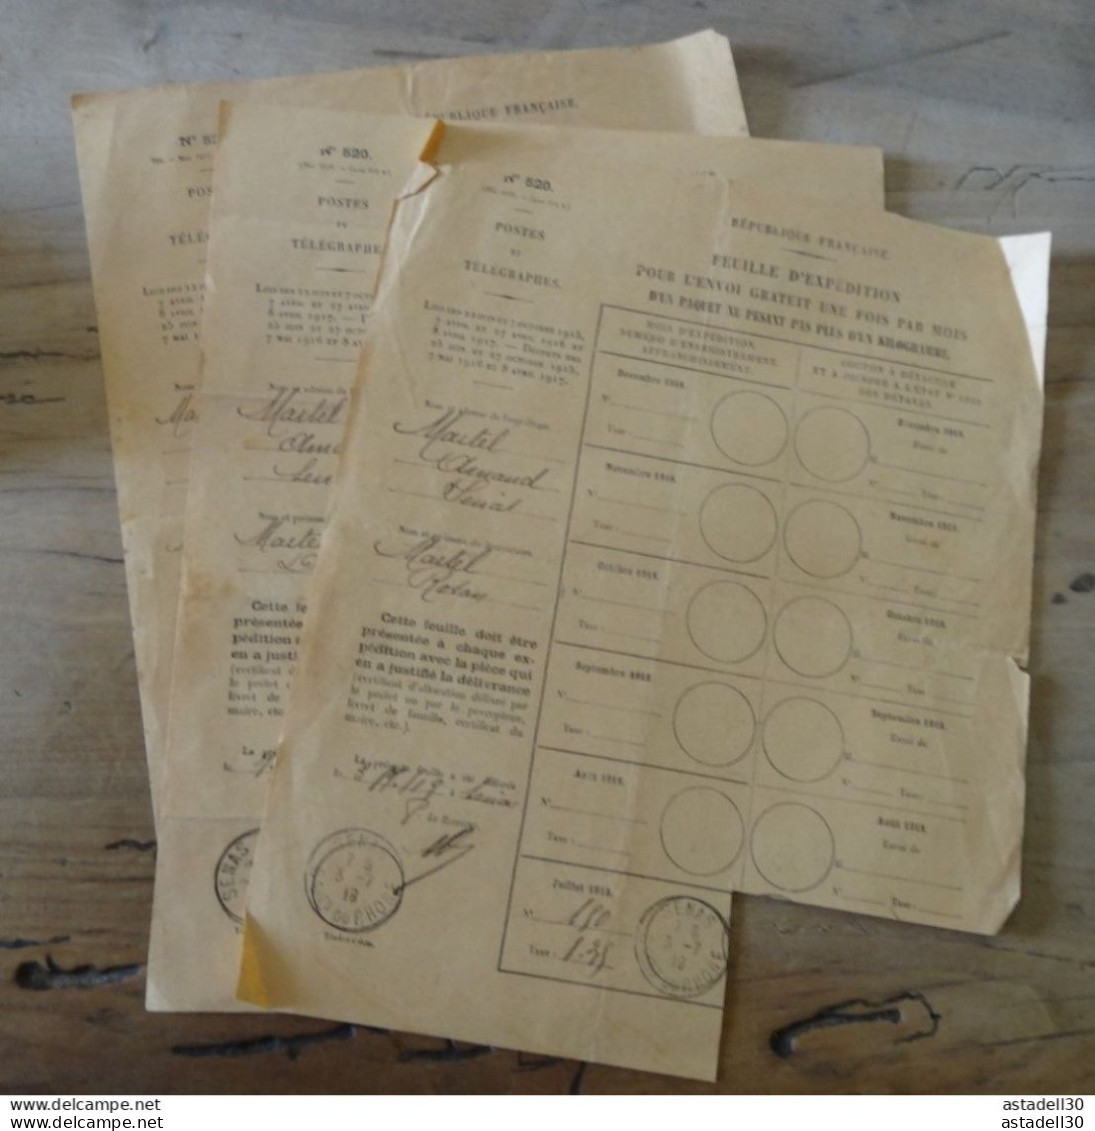 3 Feuilles D'Expédition Pour L'Envoi Gratuit De Paquets / Colis Postaux,1918-19 - SENAS 13 ... PHI-Ciasse-41.... COL-001 - Briefe U. Dokumente